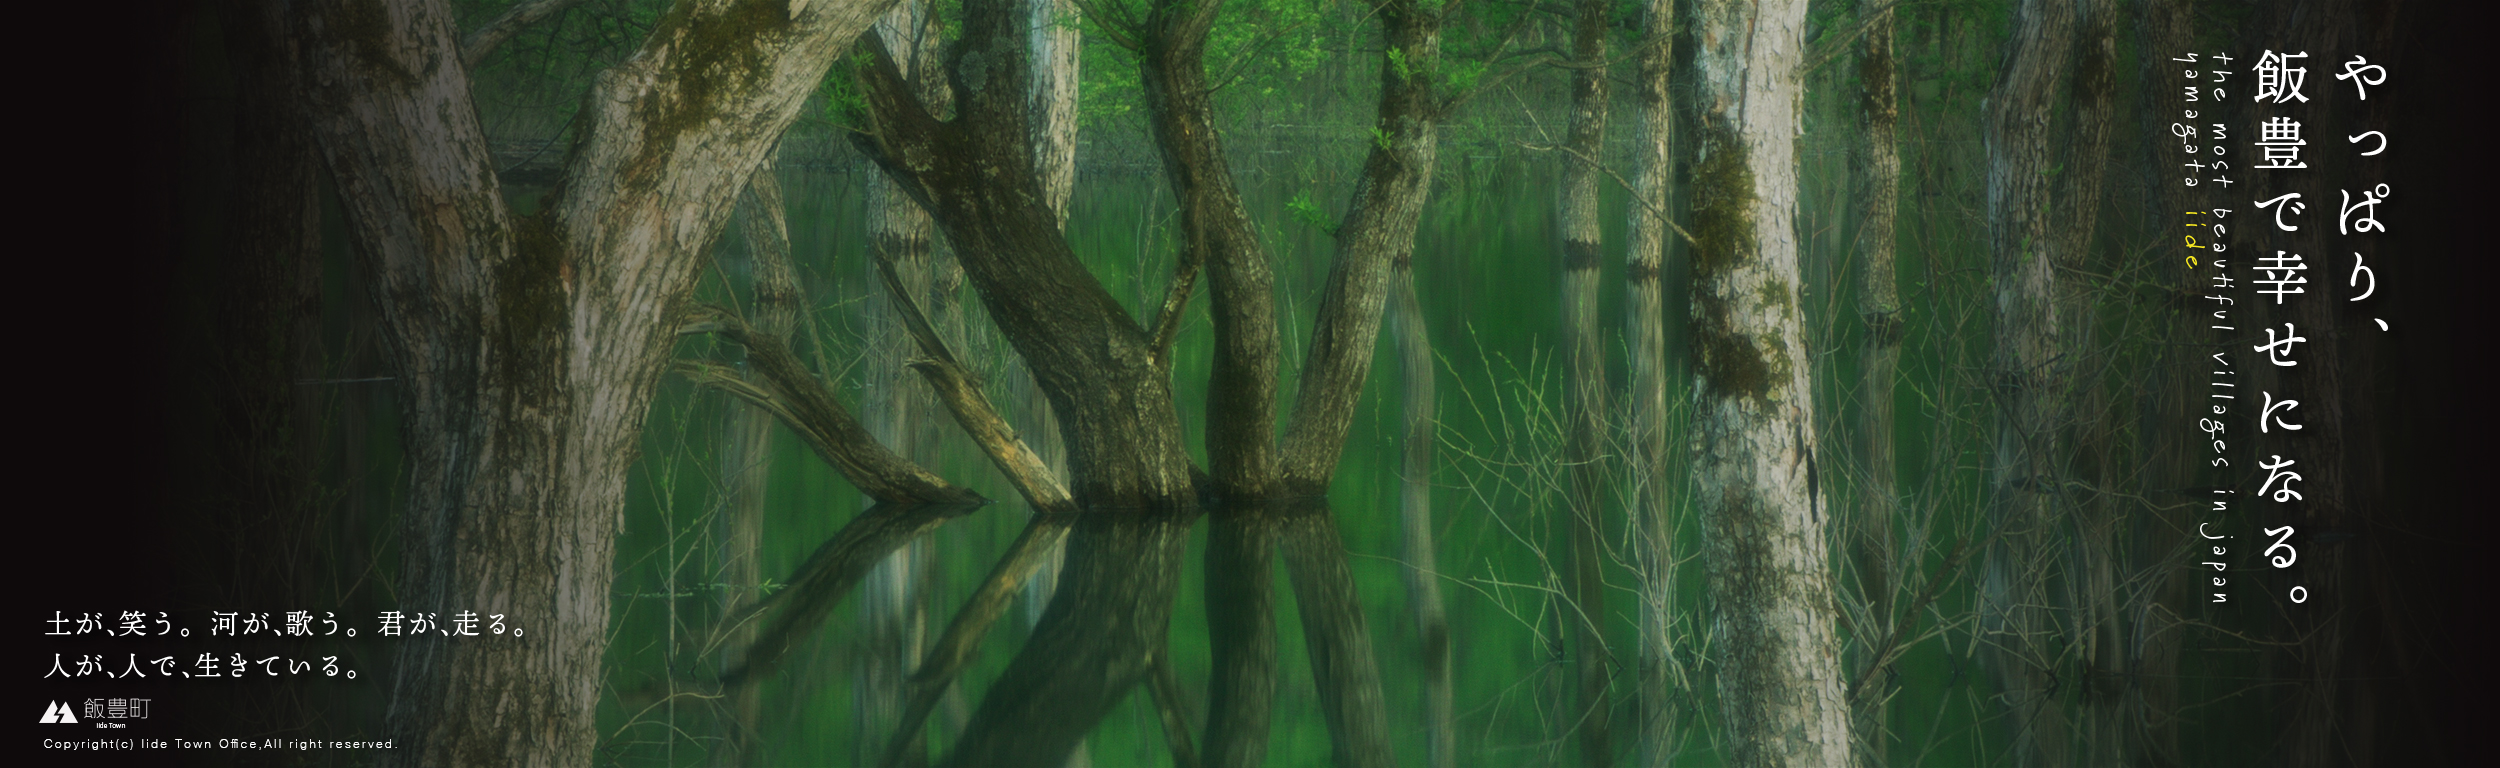 飯豊町白川湖の水没林スライドバナー画像